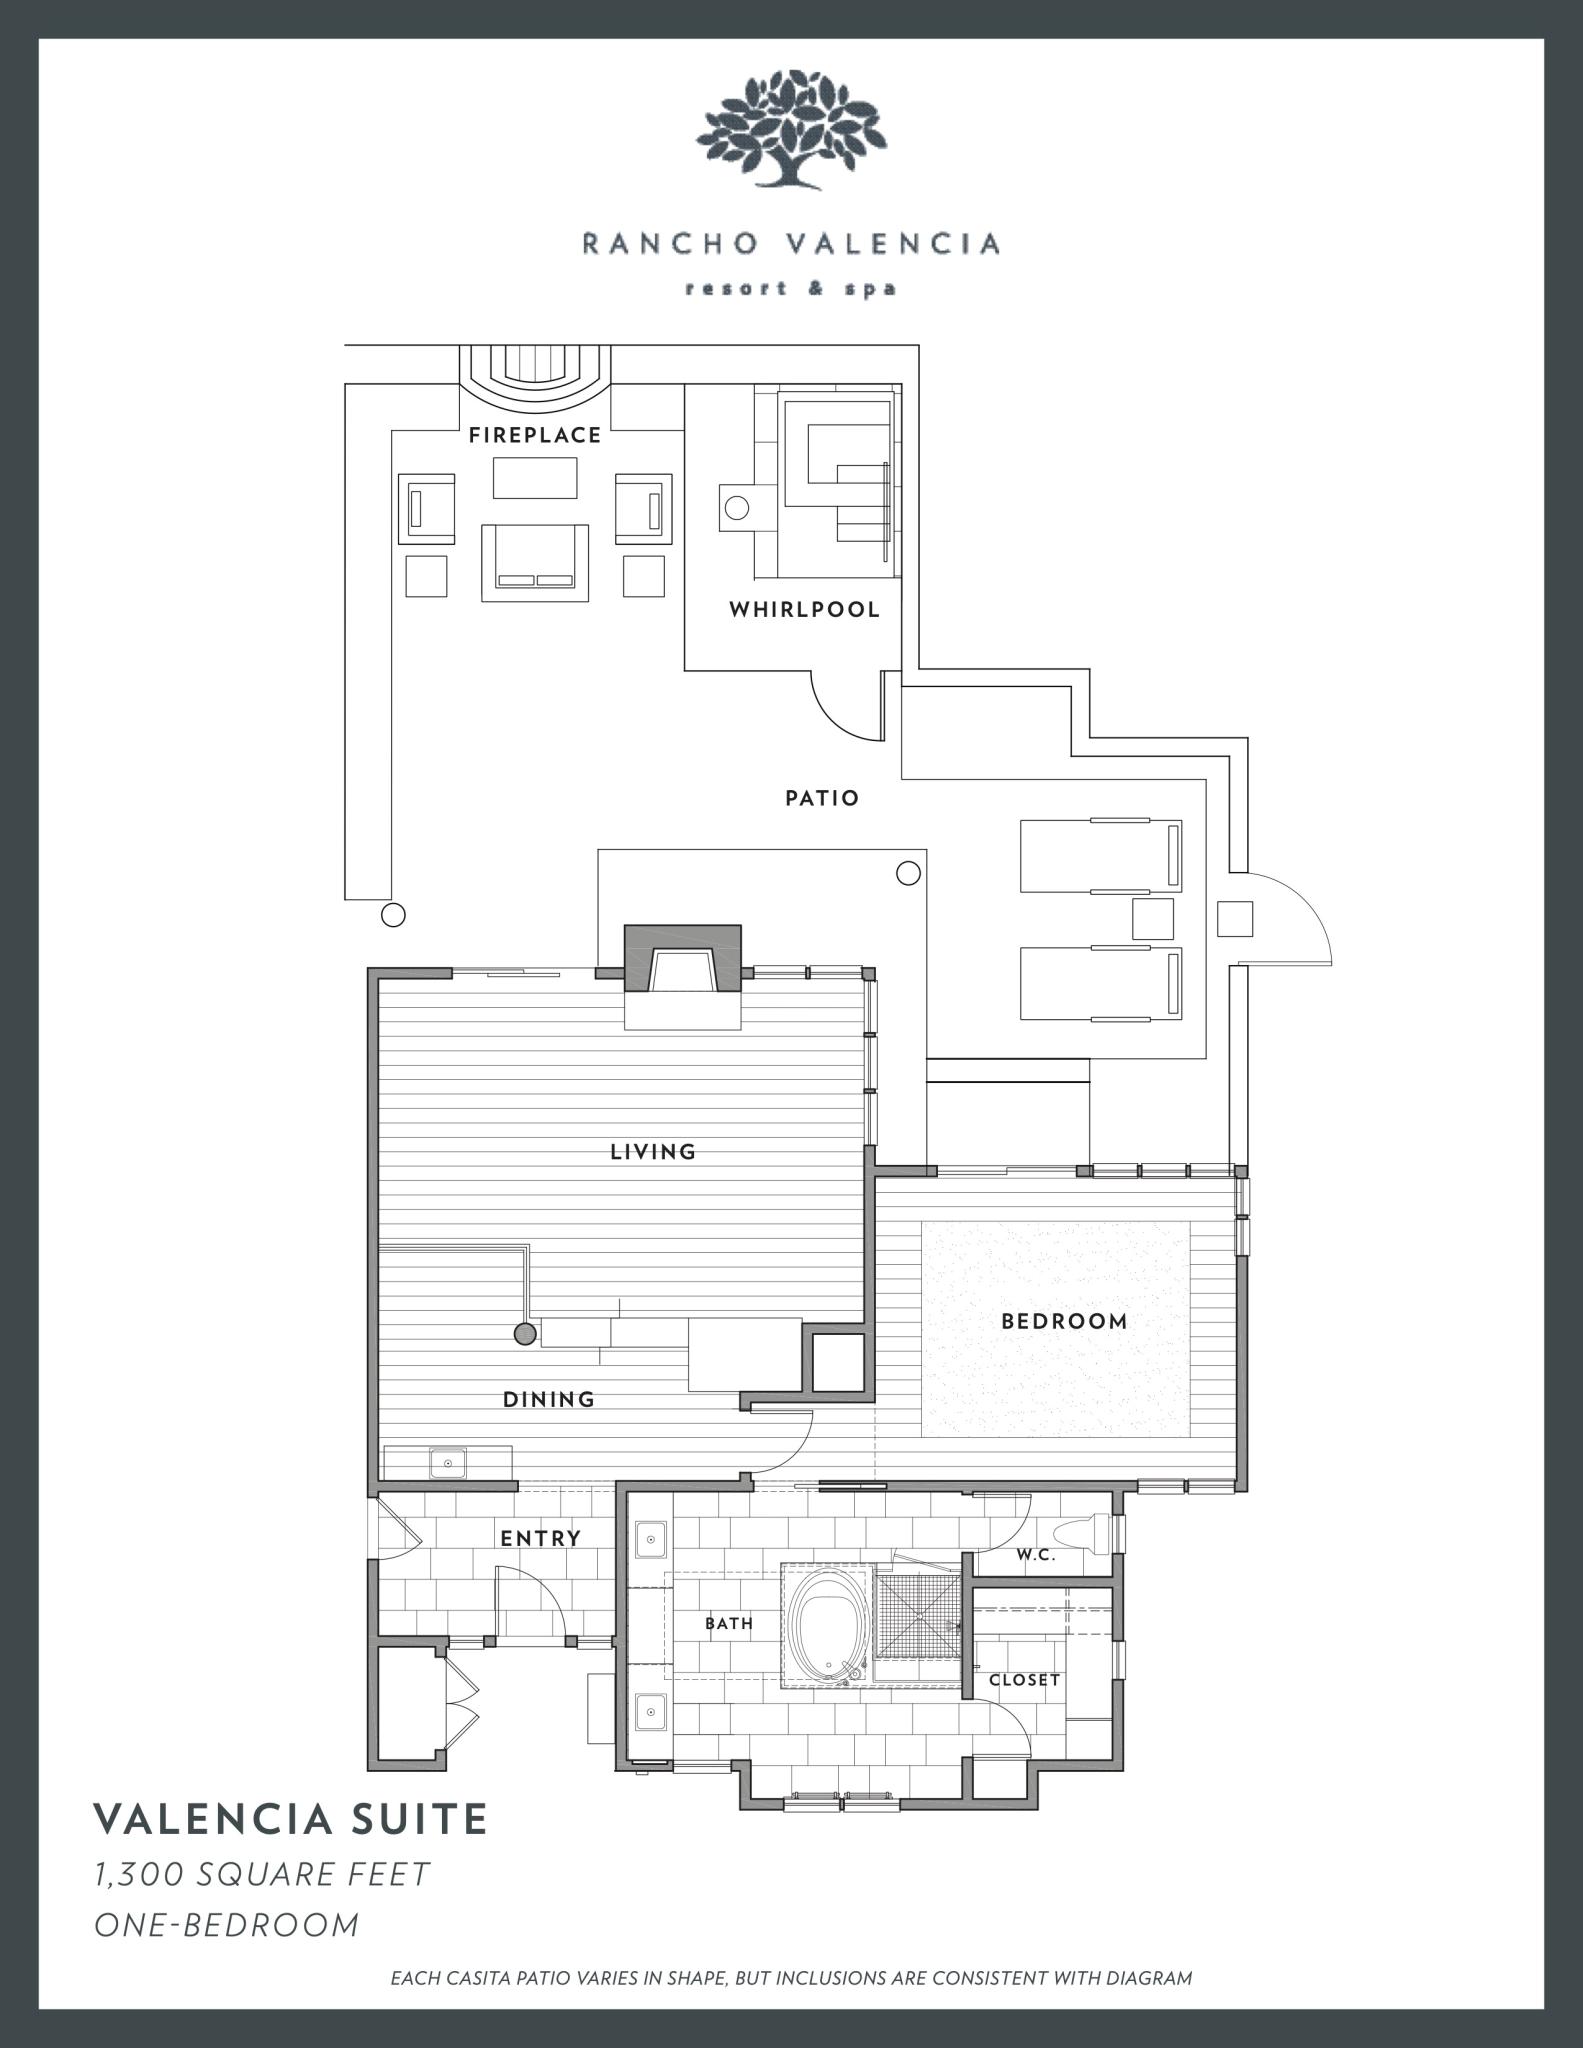 Rancho Valencia's Valencia Suite Floorplan